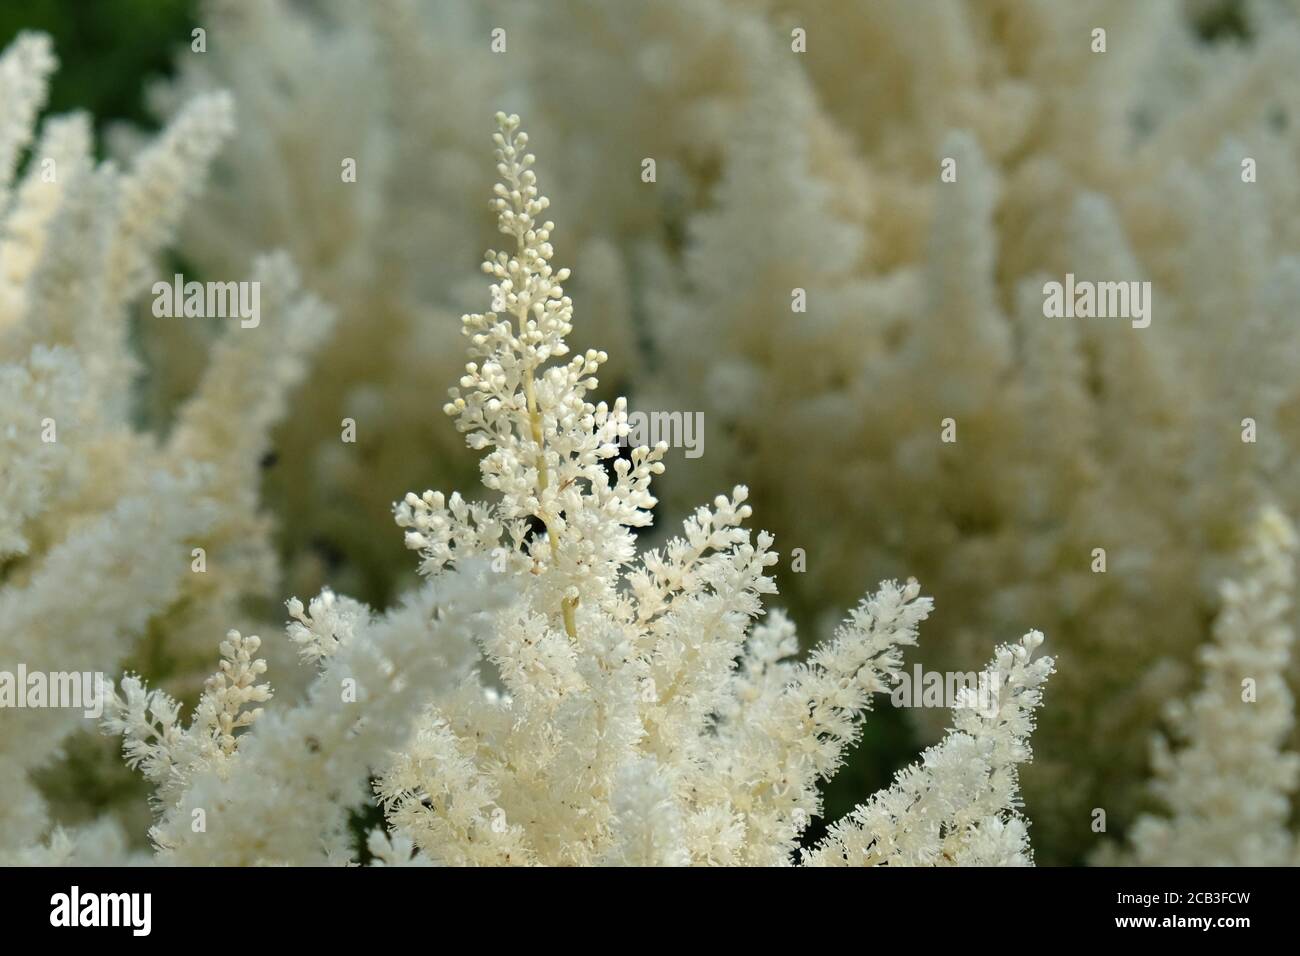 White astilbe 'false buck's beard' in flower during the summer months Stock Photo